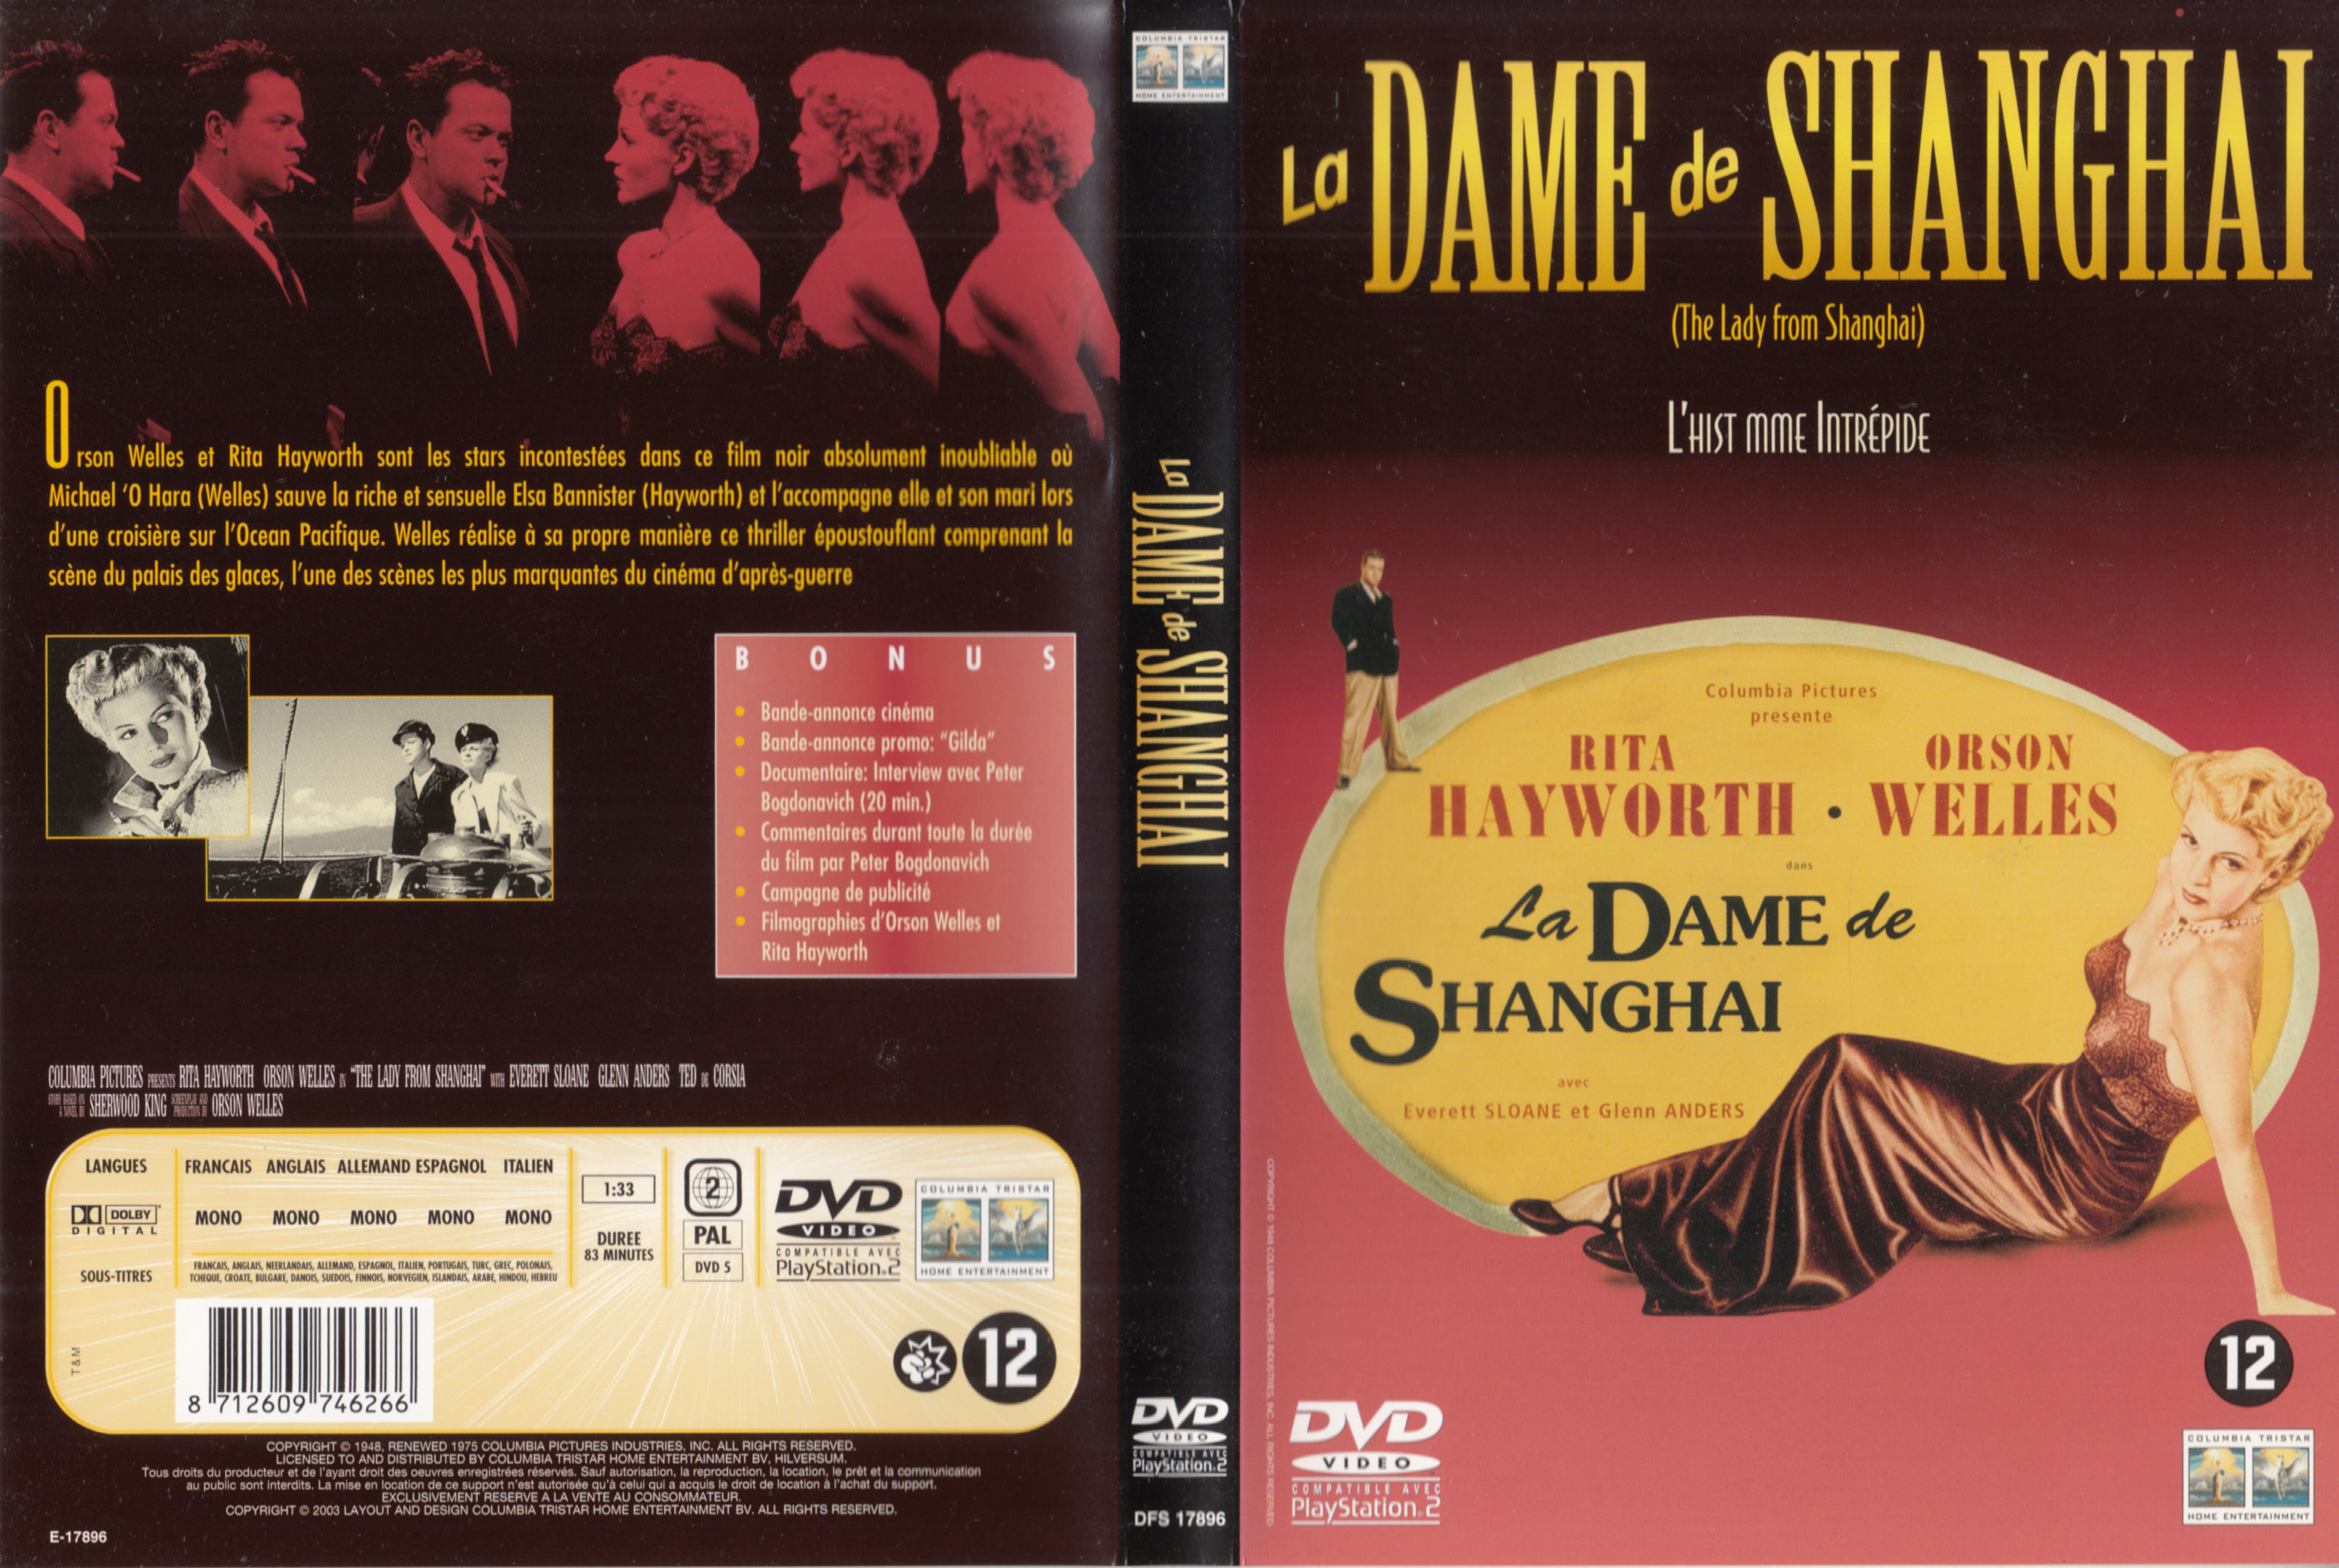 Jaquette DVD La dame de shanghai v2